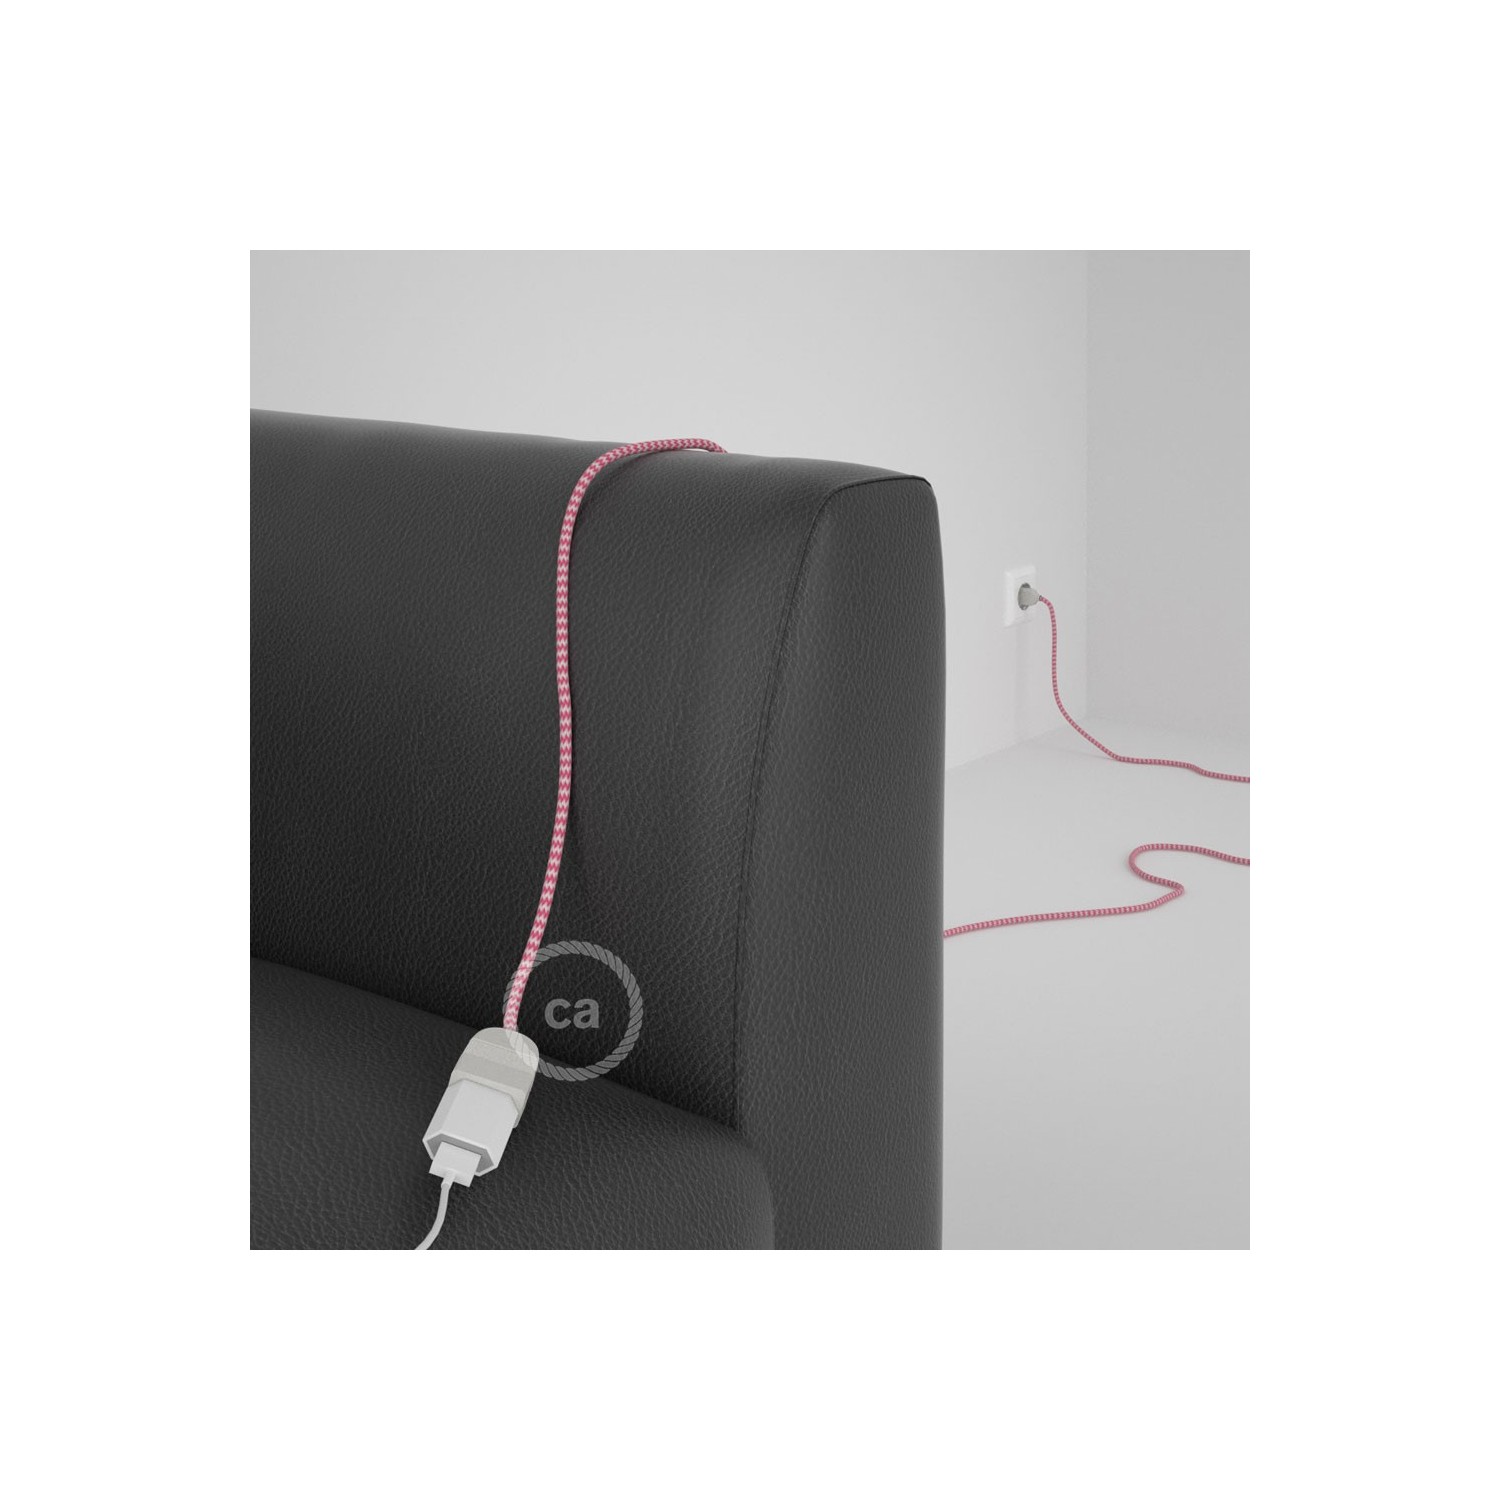 Rallonge électrique avec câble textile RZ08 Effet Soie ZigZag Blanc-Fuchsia 2P 10A Made in Italy.